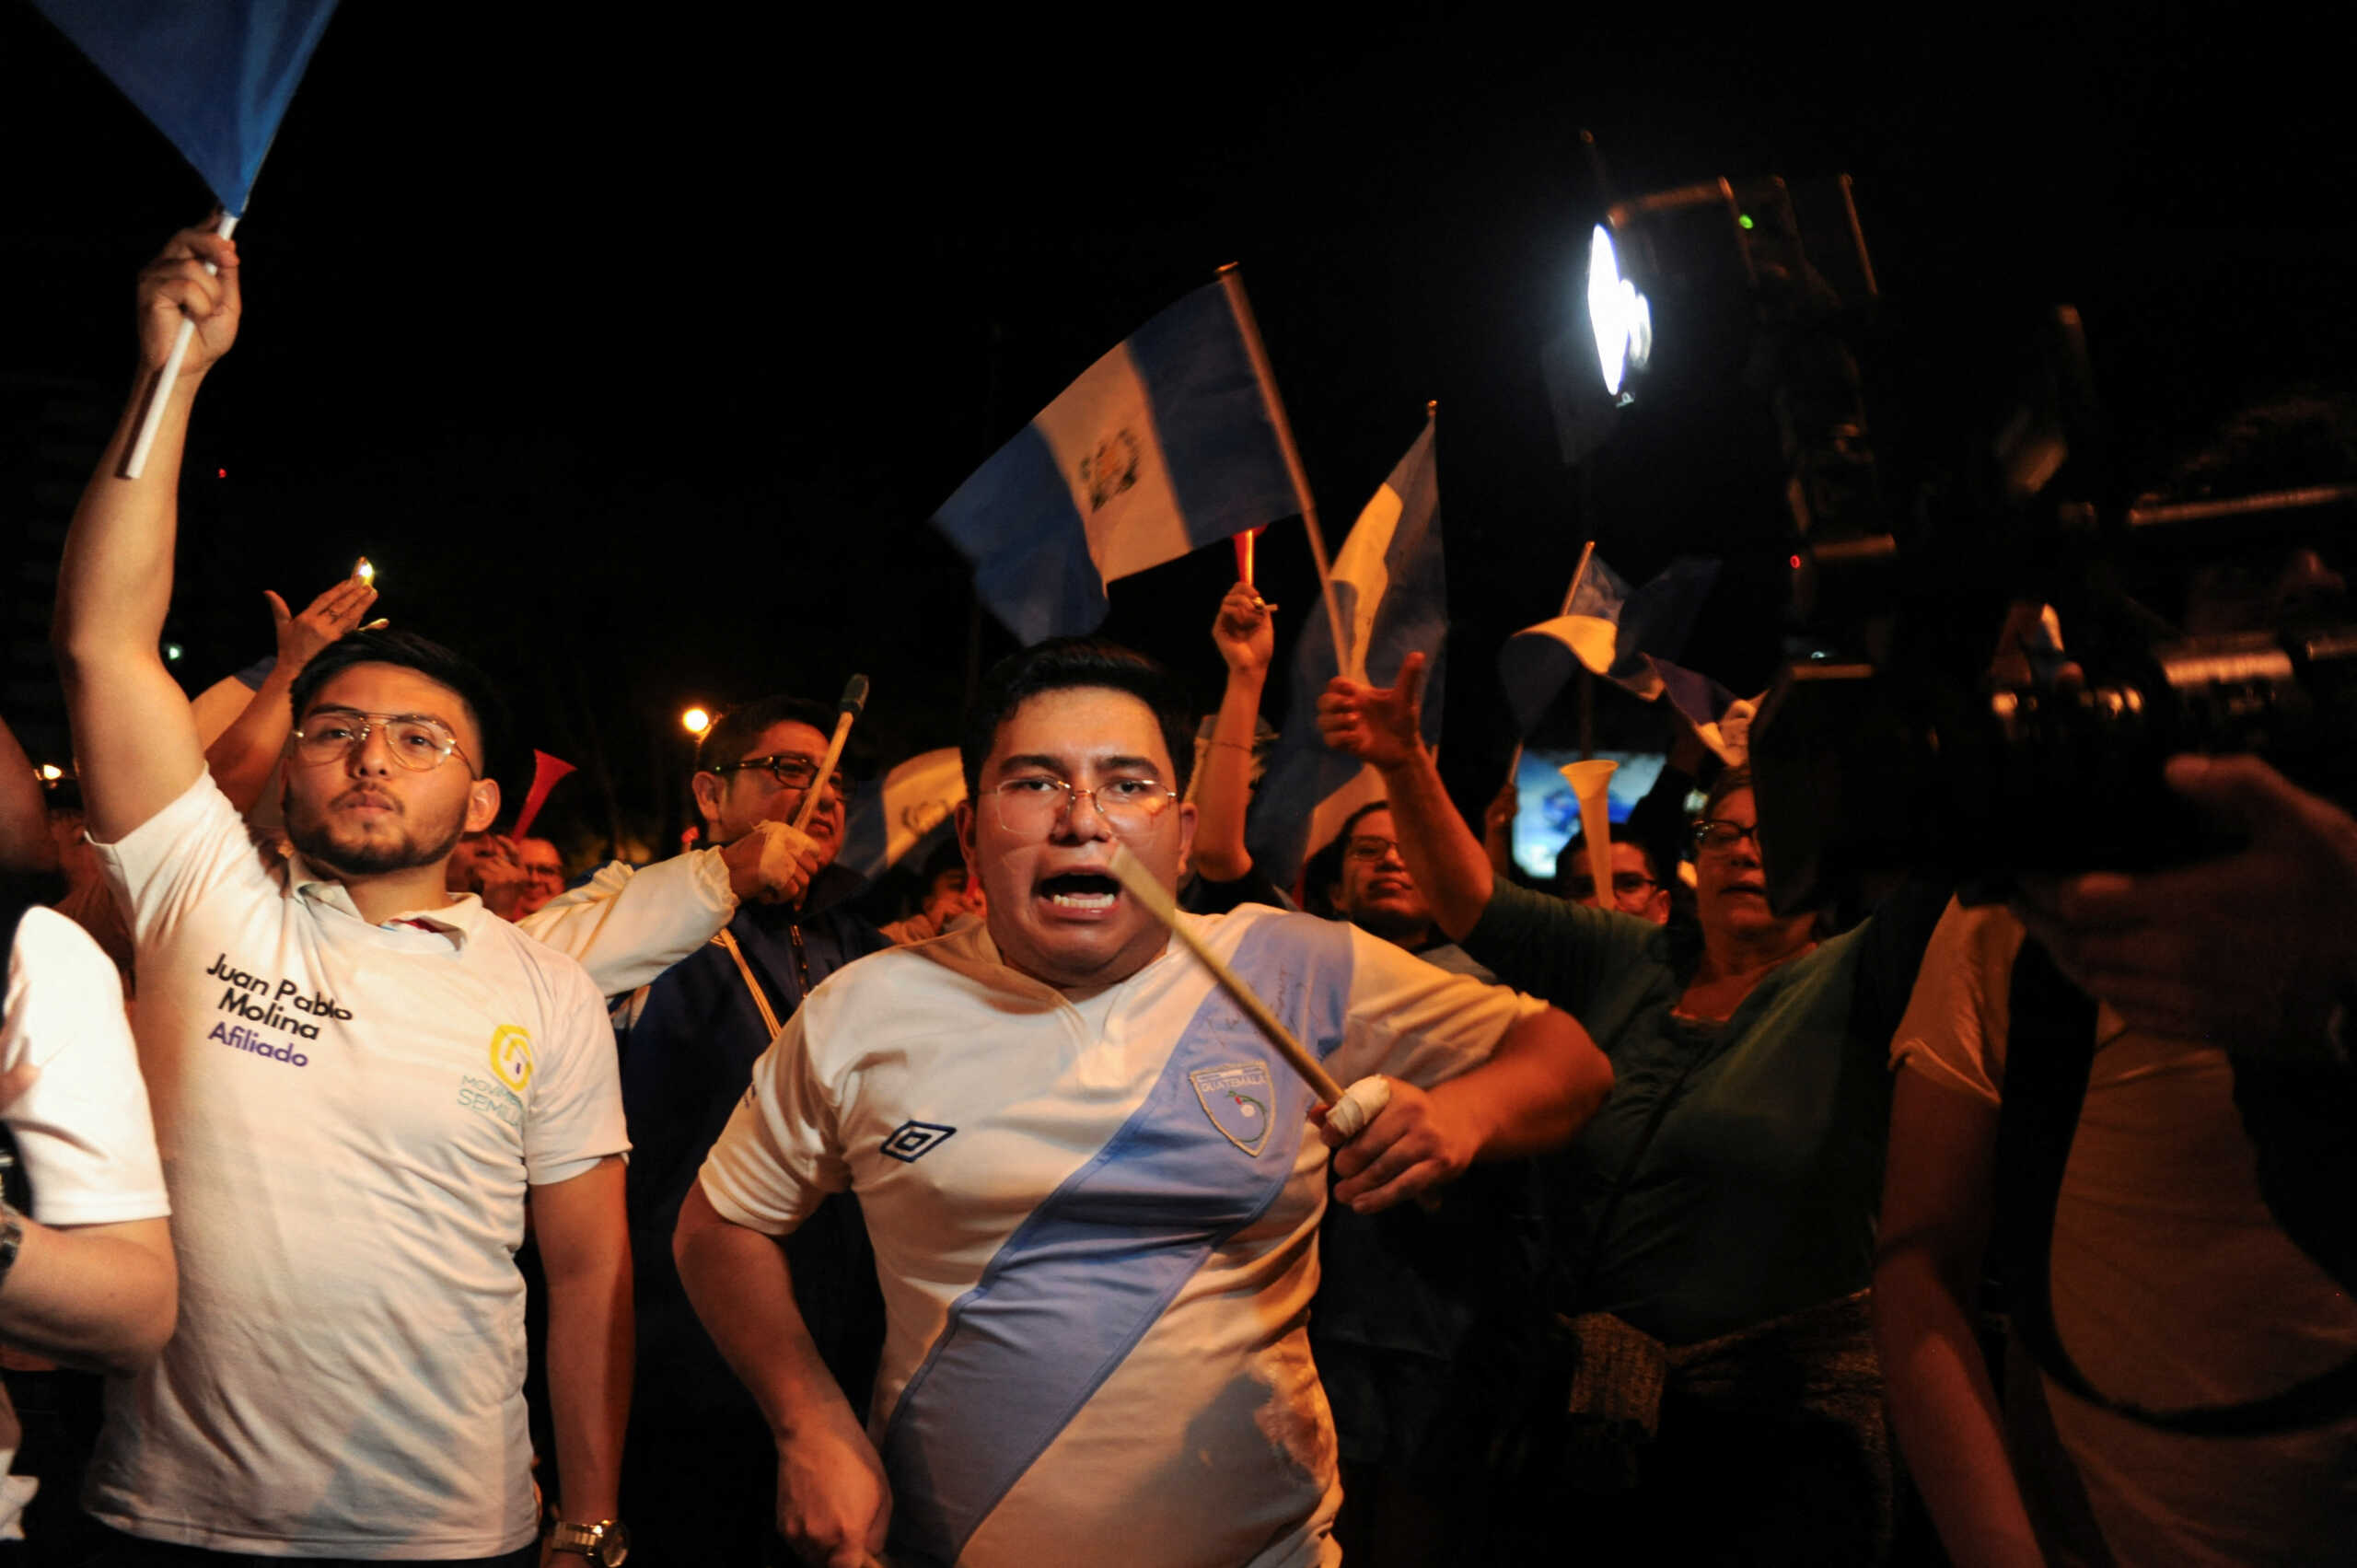 Γουατεμάλα: Μπερνάρντο Αρέβαλο ο νέος πρόεδρος - Η μεγάλη του νίκη